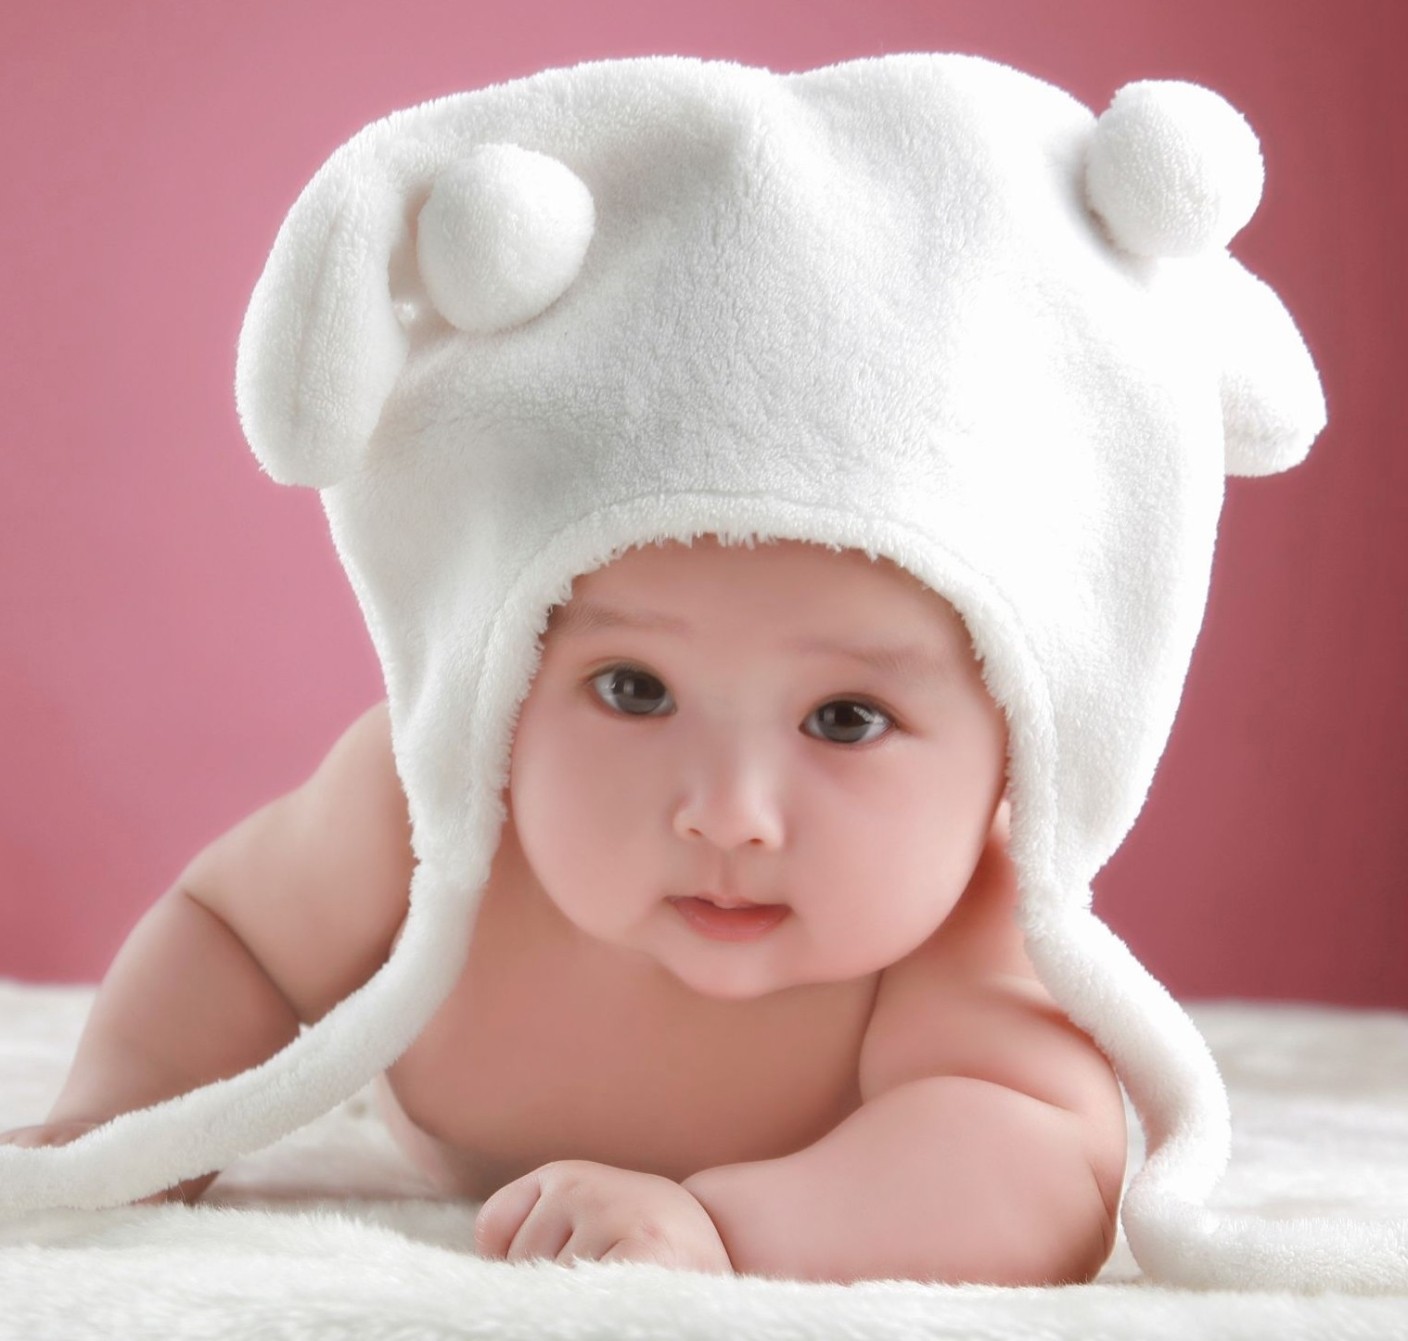 Bạn có từng nhìn thấy một đứa trẻ sơ sinh với làn da mịn màng và đôi mắt to tròn như hạt đậu? Nếu chưa, hãy cùng xem những hình ảnh đẹp nhất về bé sơ sinh này. Bạn sẽ không thể rời mắt ra khỏi những hình ảnh đầy cảm xúc này.